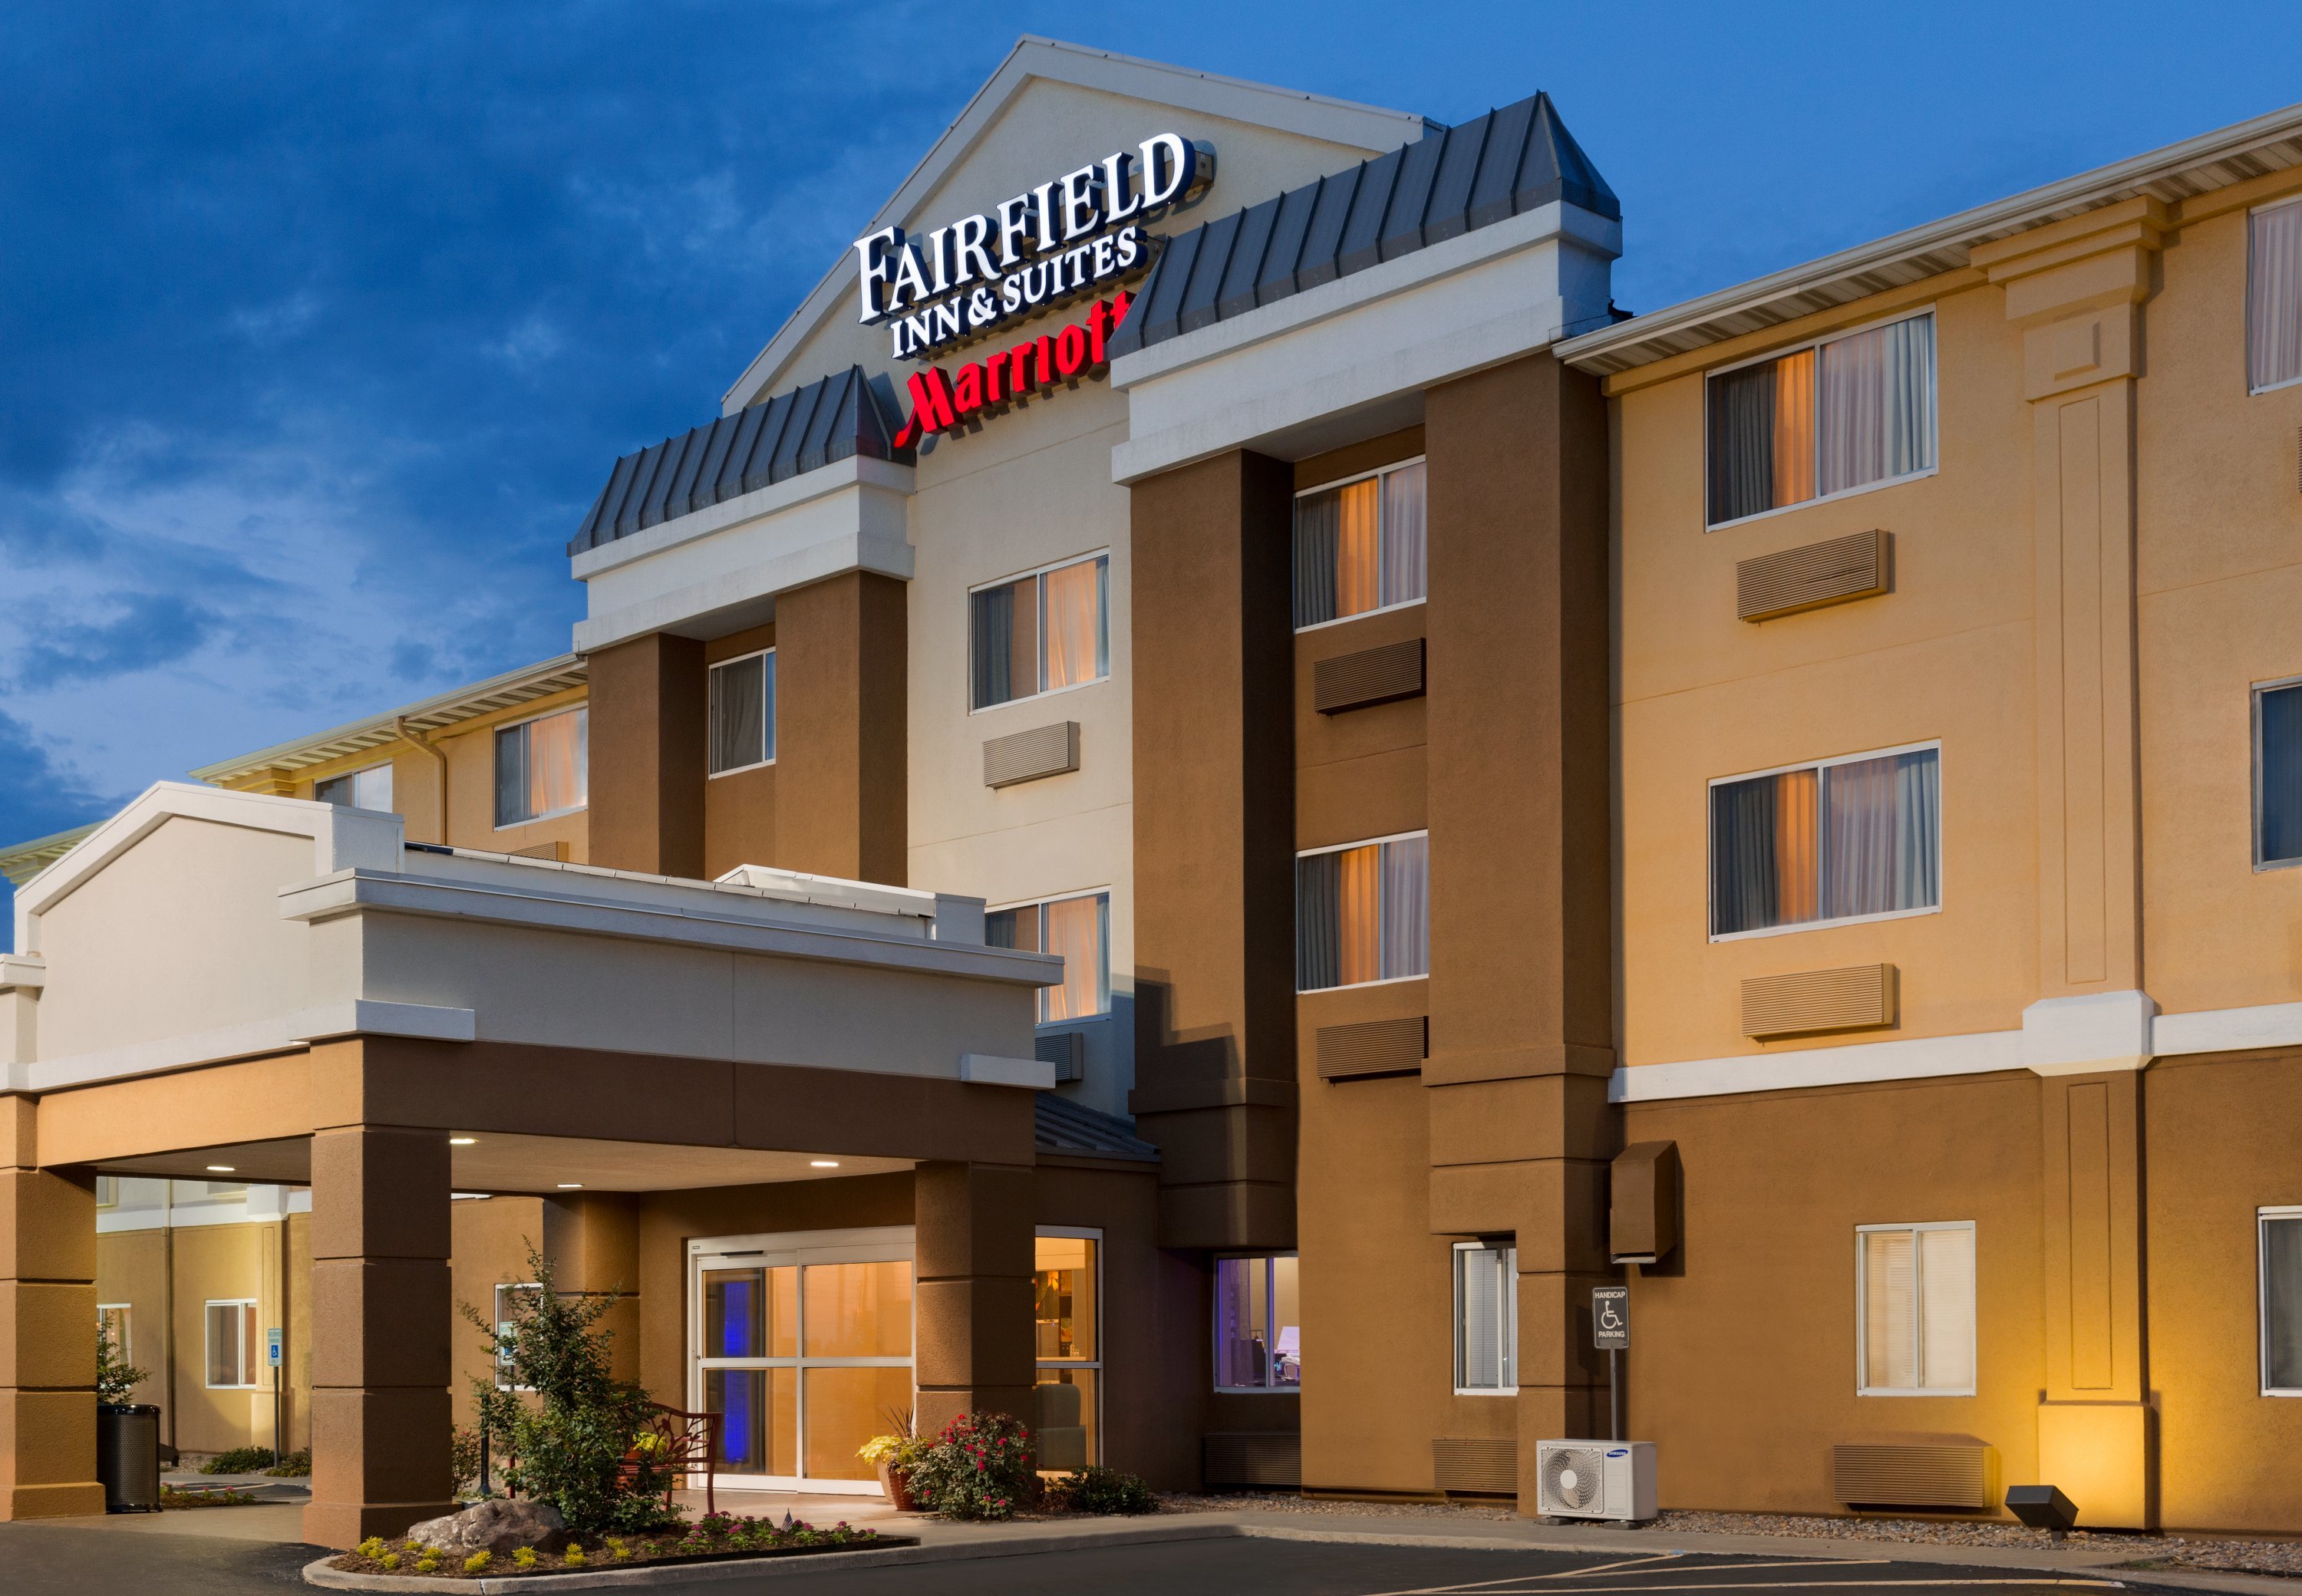 Photo of Fairfield Inn & Suites by Marriott Oklahoma City Quail Springs/South Edmond, Oklahoma City, OK